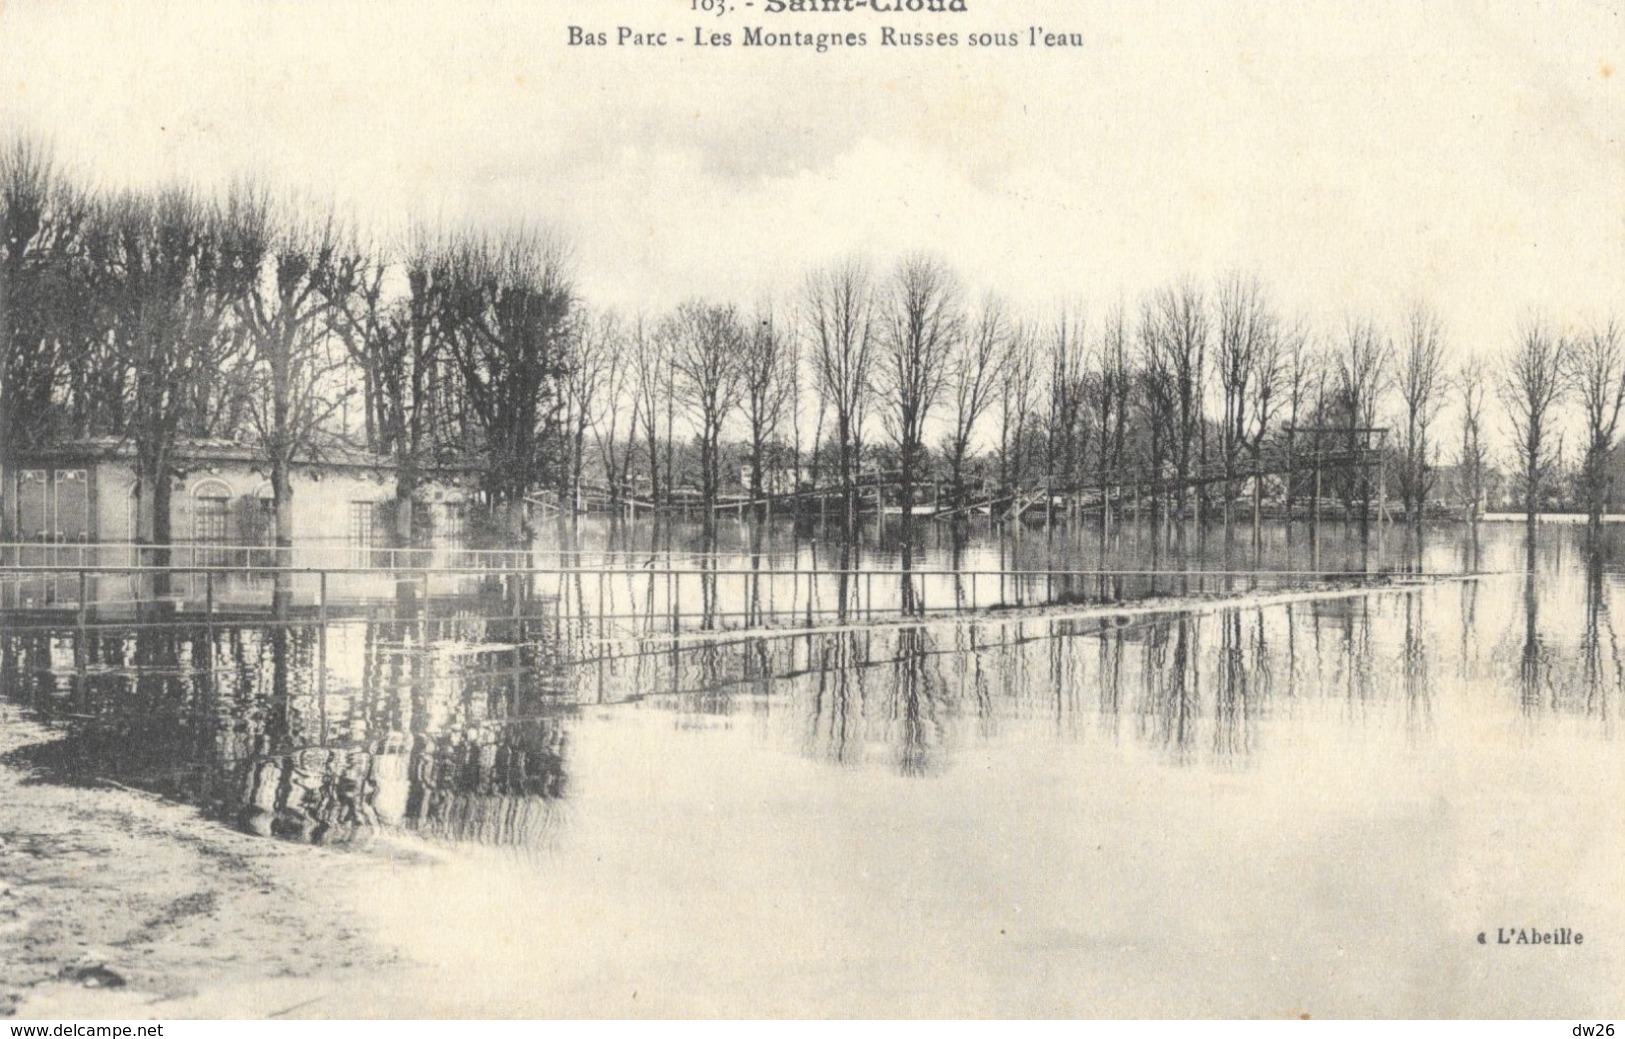 Crues De La Seine 1910 - Saint-Cloud - Bas Parc - Les Montagnes Russes Sous L'eau - Carte L'Abeille N° 103 Non Circulée - Inondations